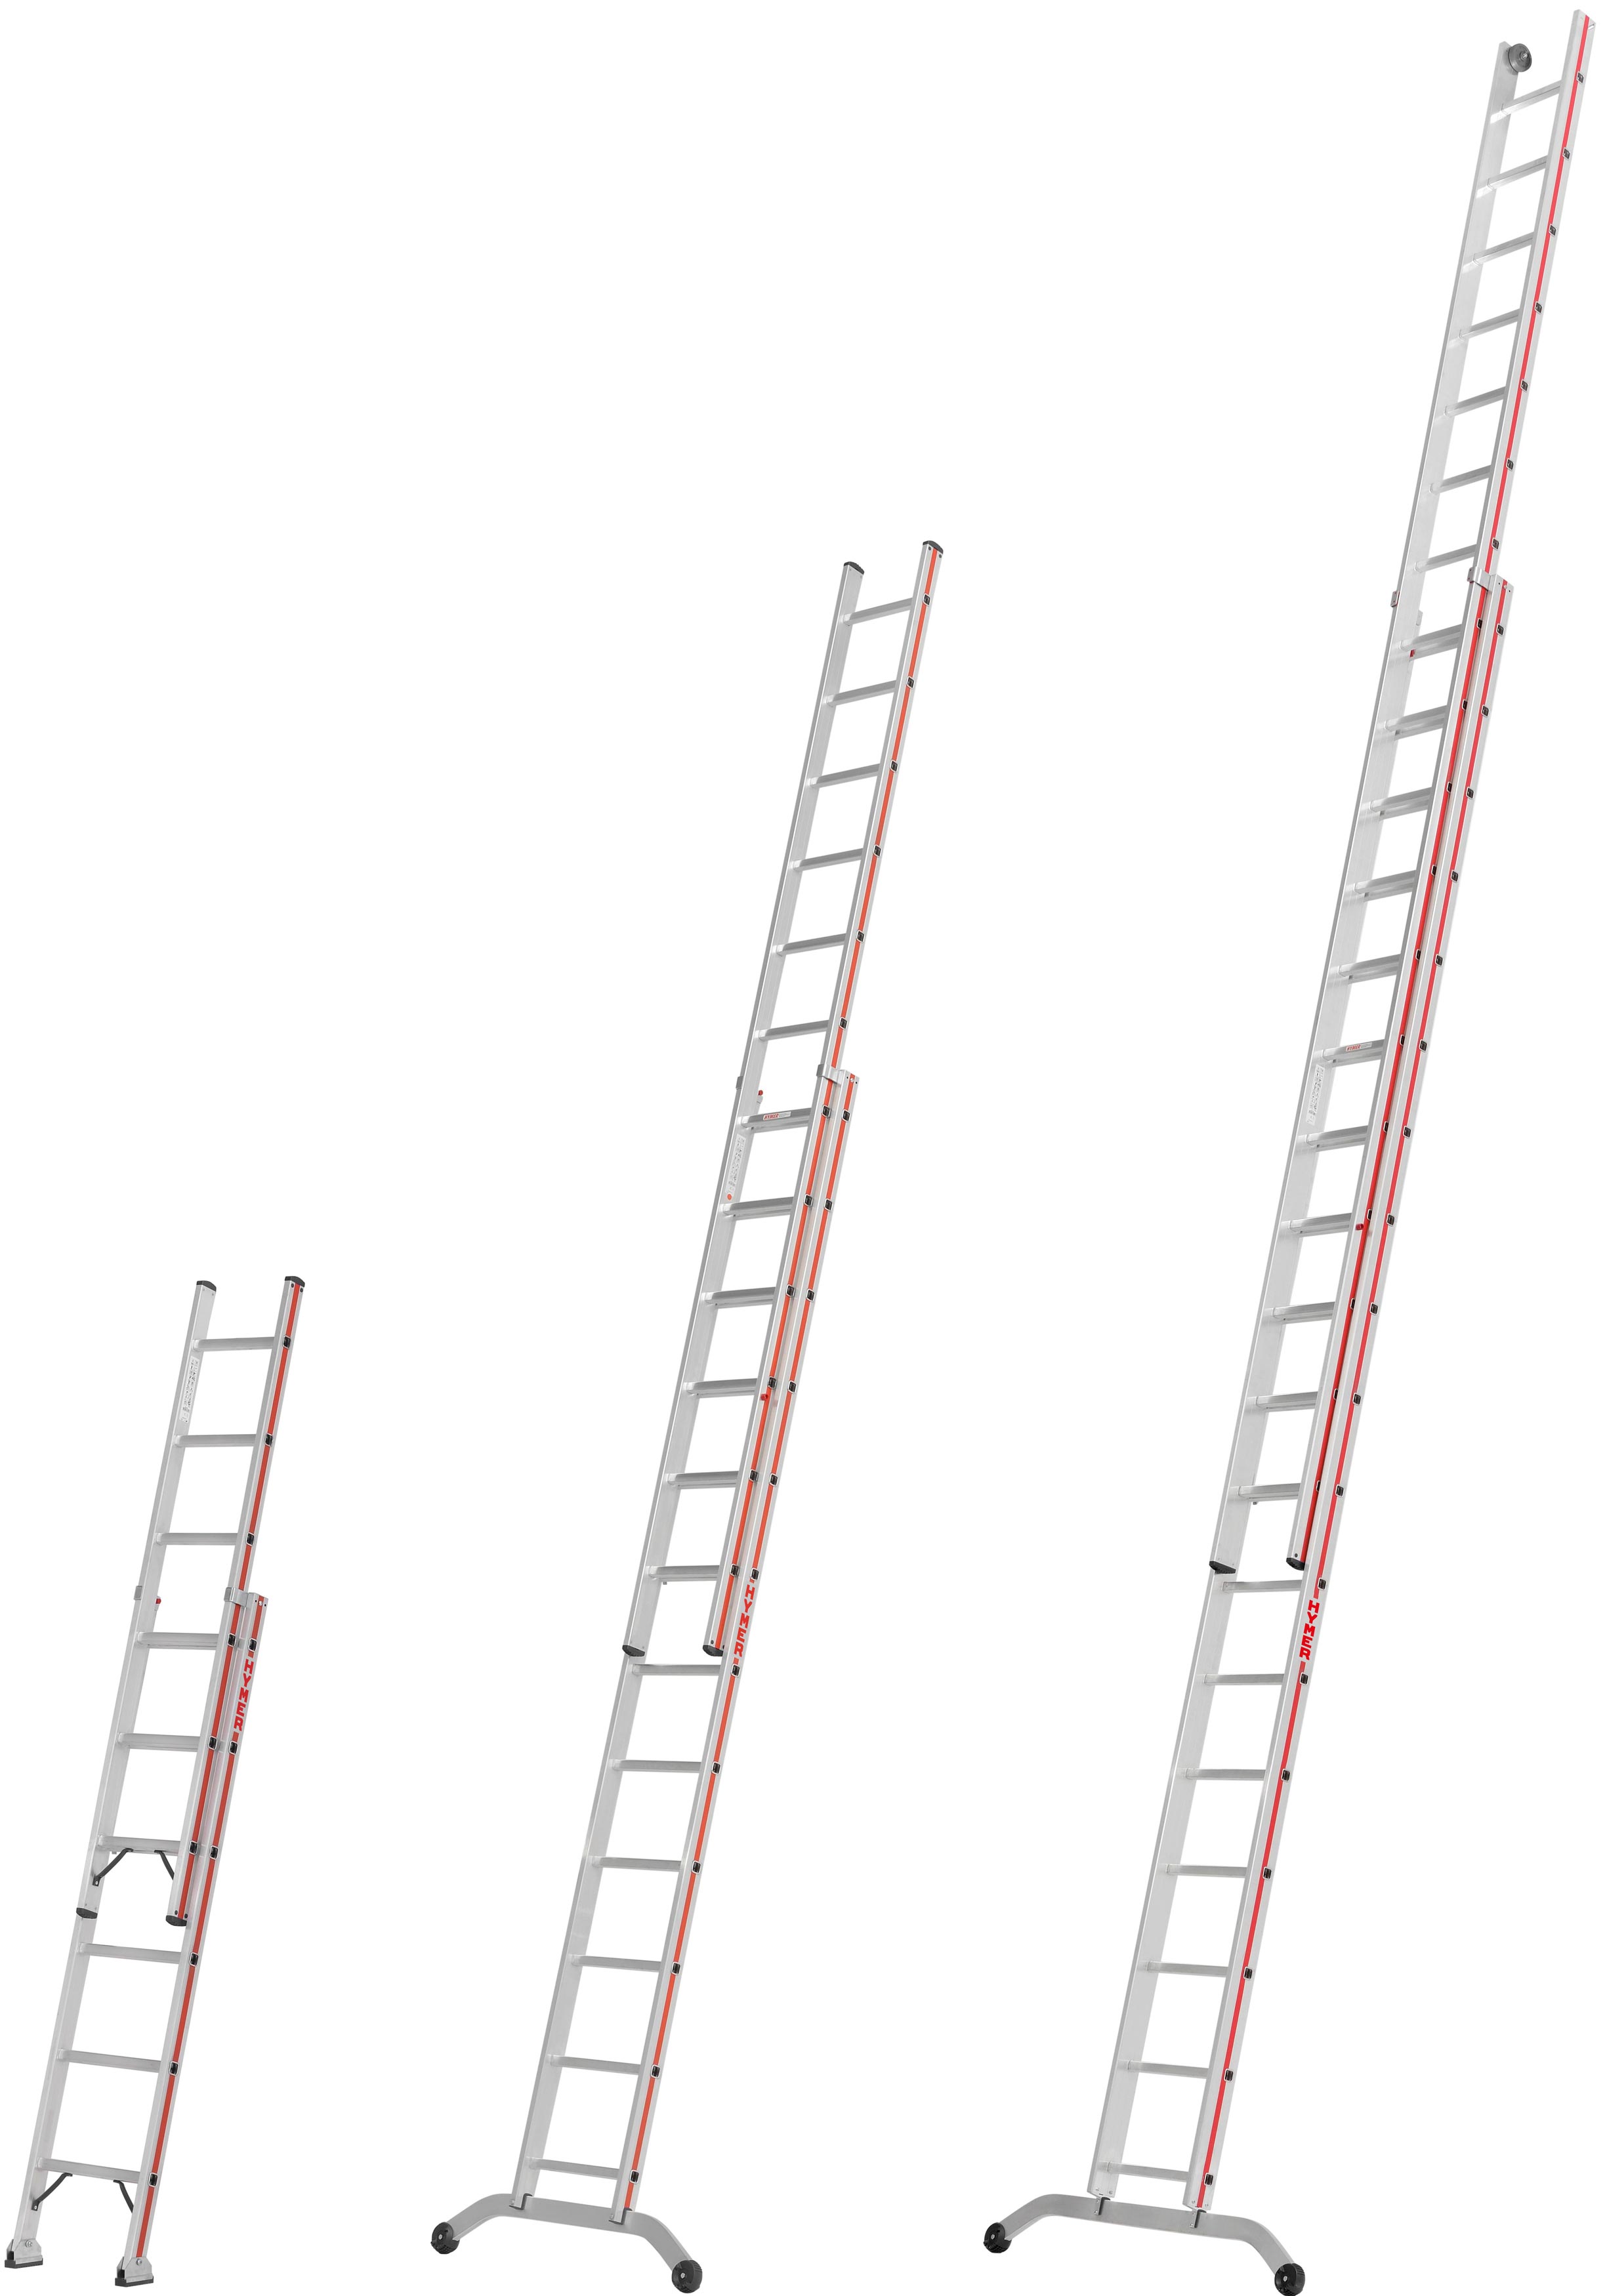 Hymer Schiebeleiter 2-teilig SC 60 Alu 2x6 - 2x18 Sprossen Leiter aus dem Profiprogramm (HY-C-604612) Bild-01